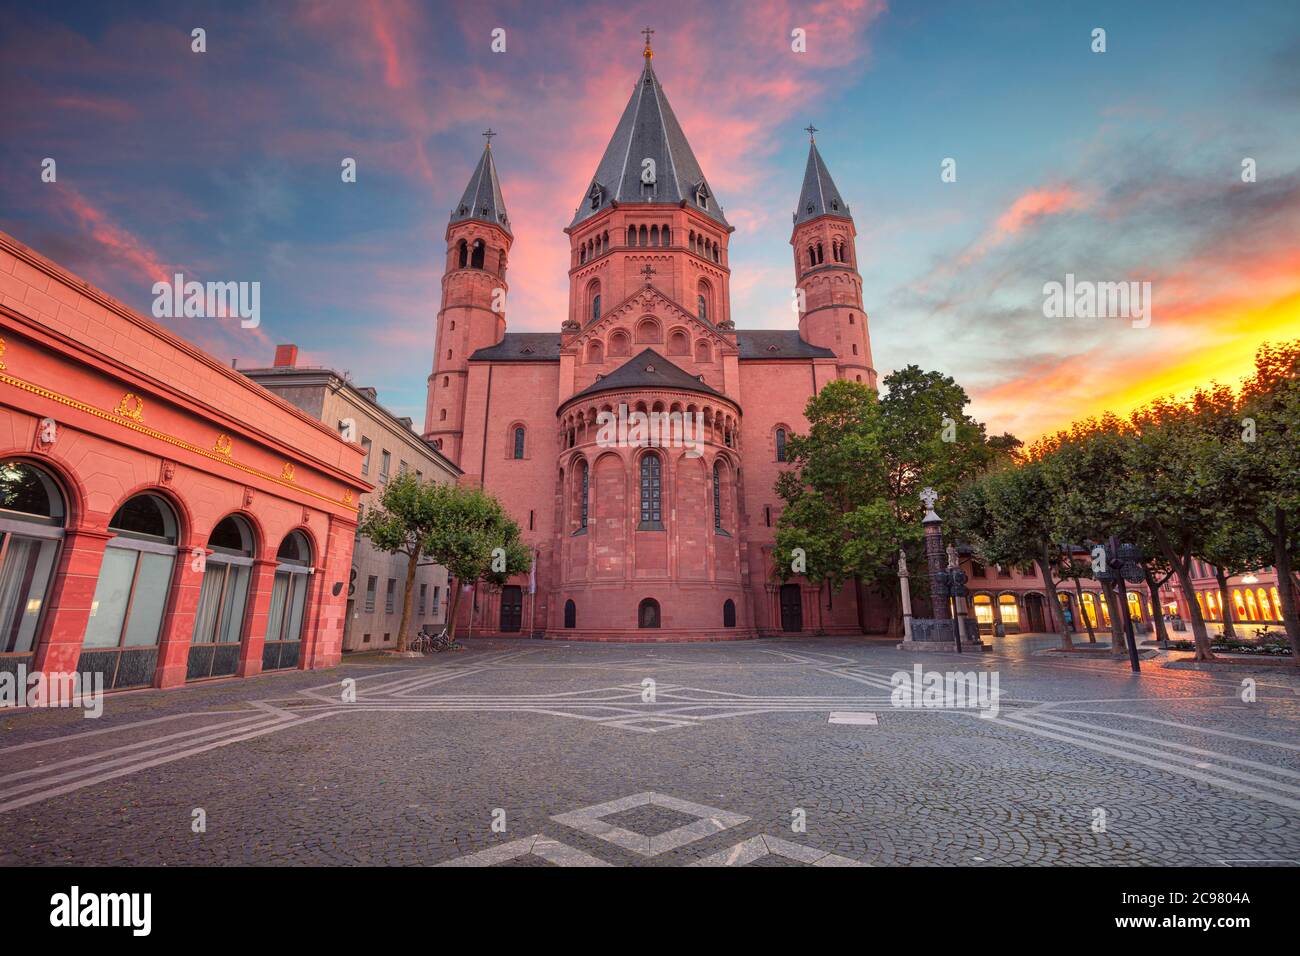 Mainz, Alemania. Paisaje urbano imagen del centro de Mainz con la Catedral de Mainz durante la hermosa puesta de sol. Foto de stock